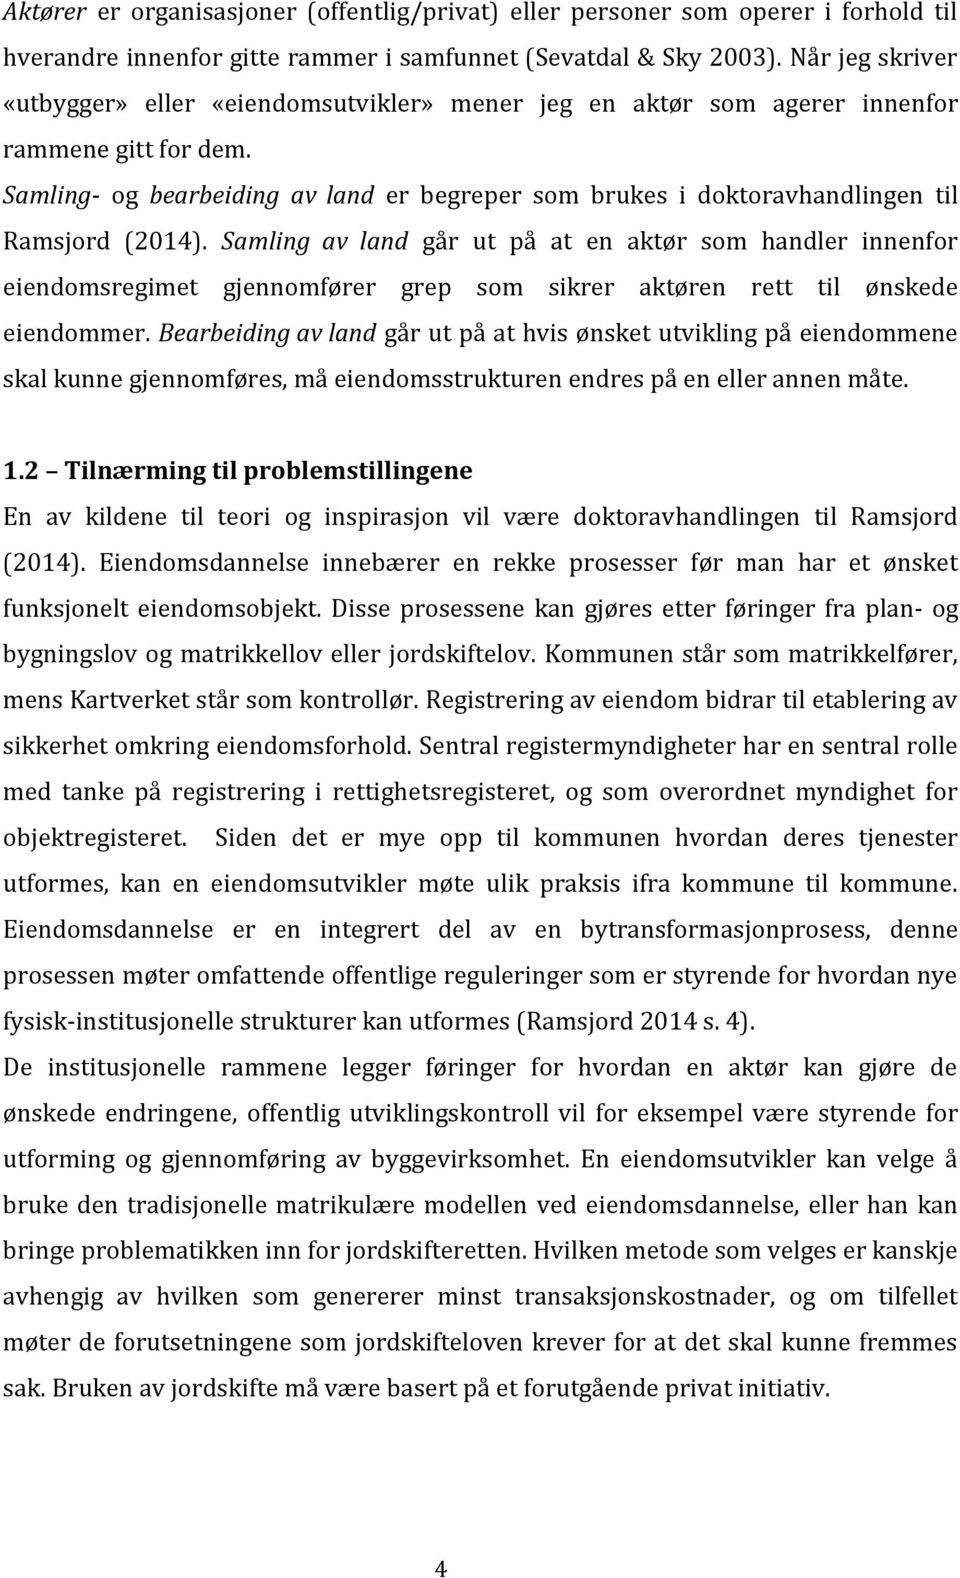 Samling- og bearbeiding av land er begreper som brukes i doktoravhandlingen til Ramsjord (2014).